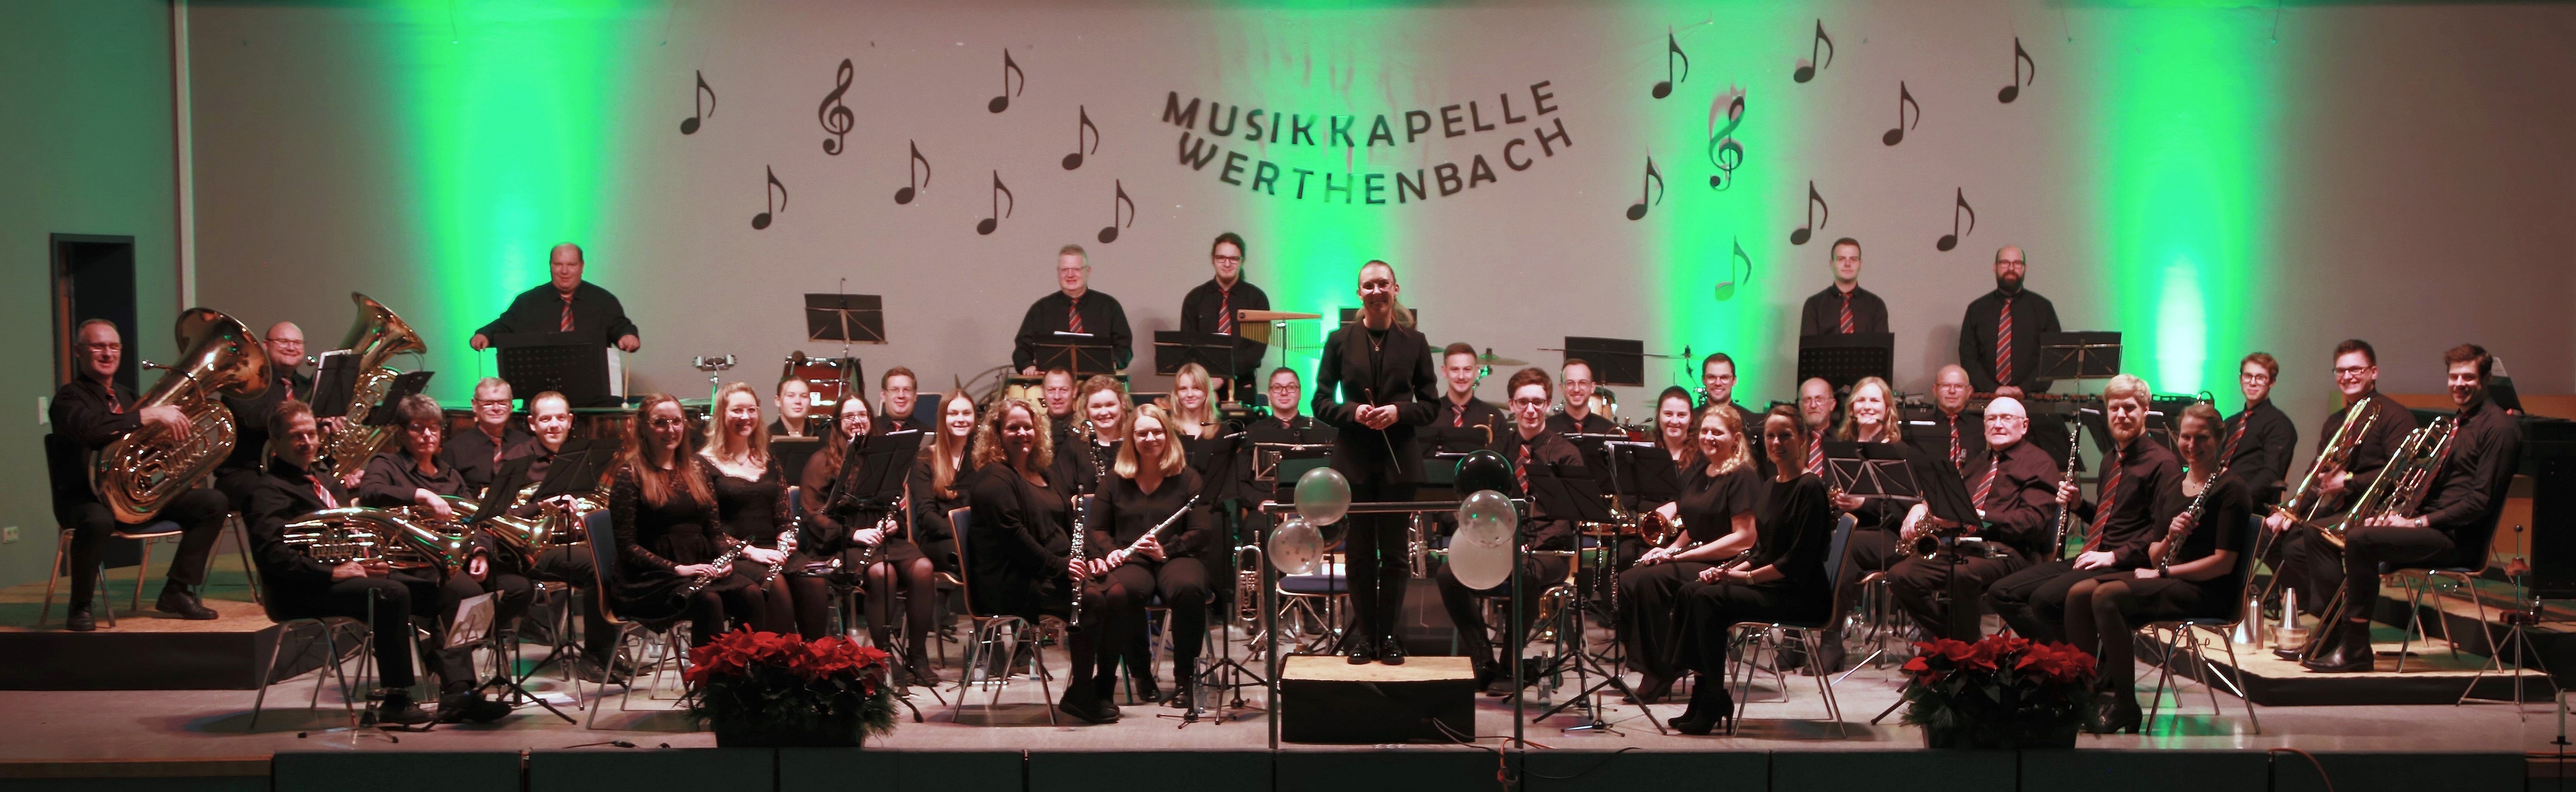 (c) Musikkapelle-werthenbach.de